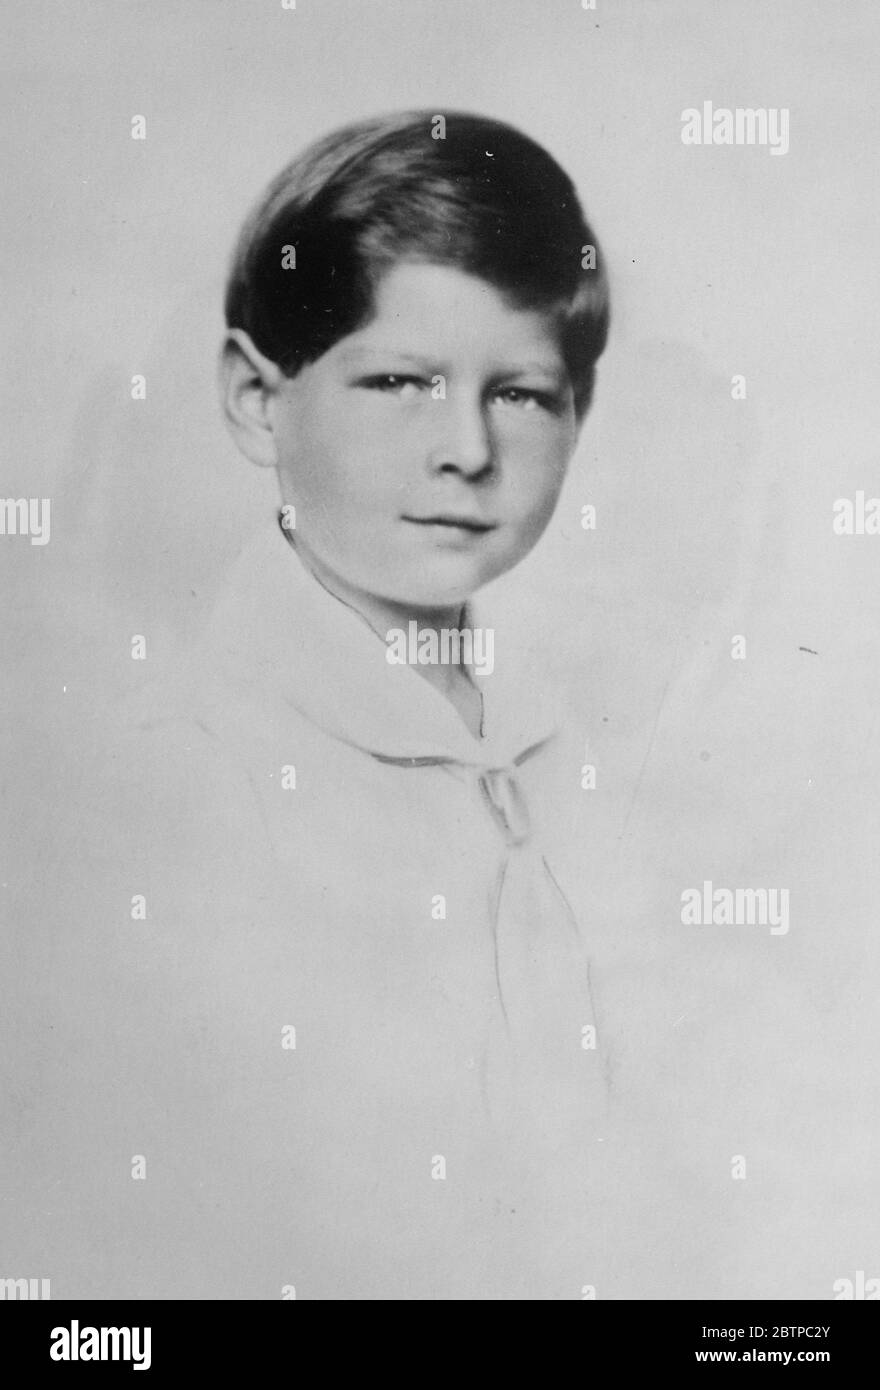 Junge Prinz ein Soldat. Kronprinz Michael von Rumänien, der gerade seinen neunten Geburtstag gefeiert hat, durch den Eintritt in die Militärschule in Bukarest. November 1930 Stockfoto